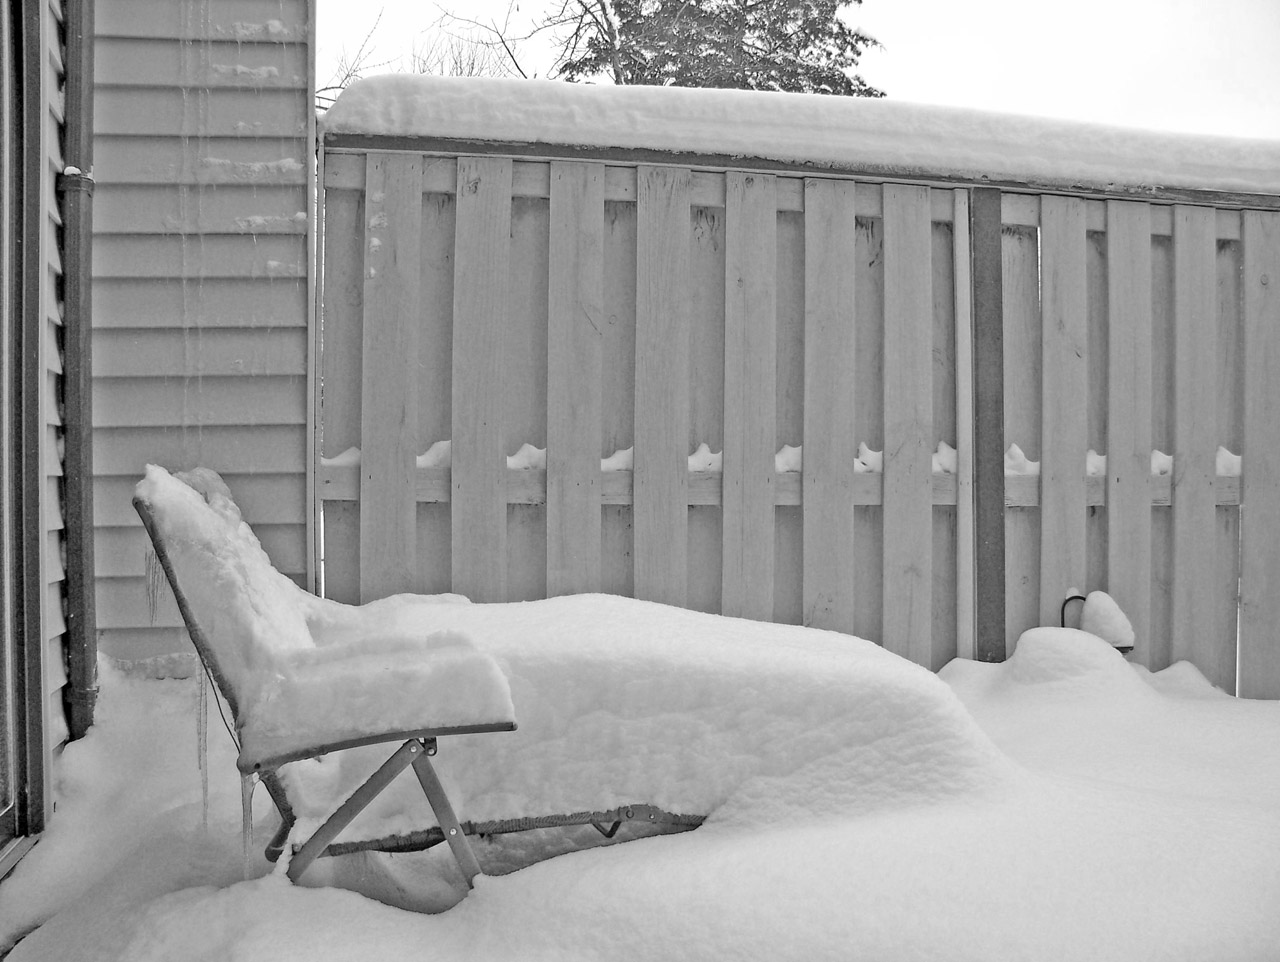 snow lawn chair free photo